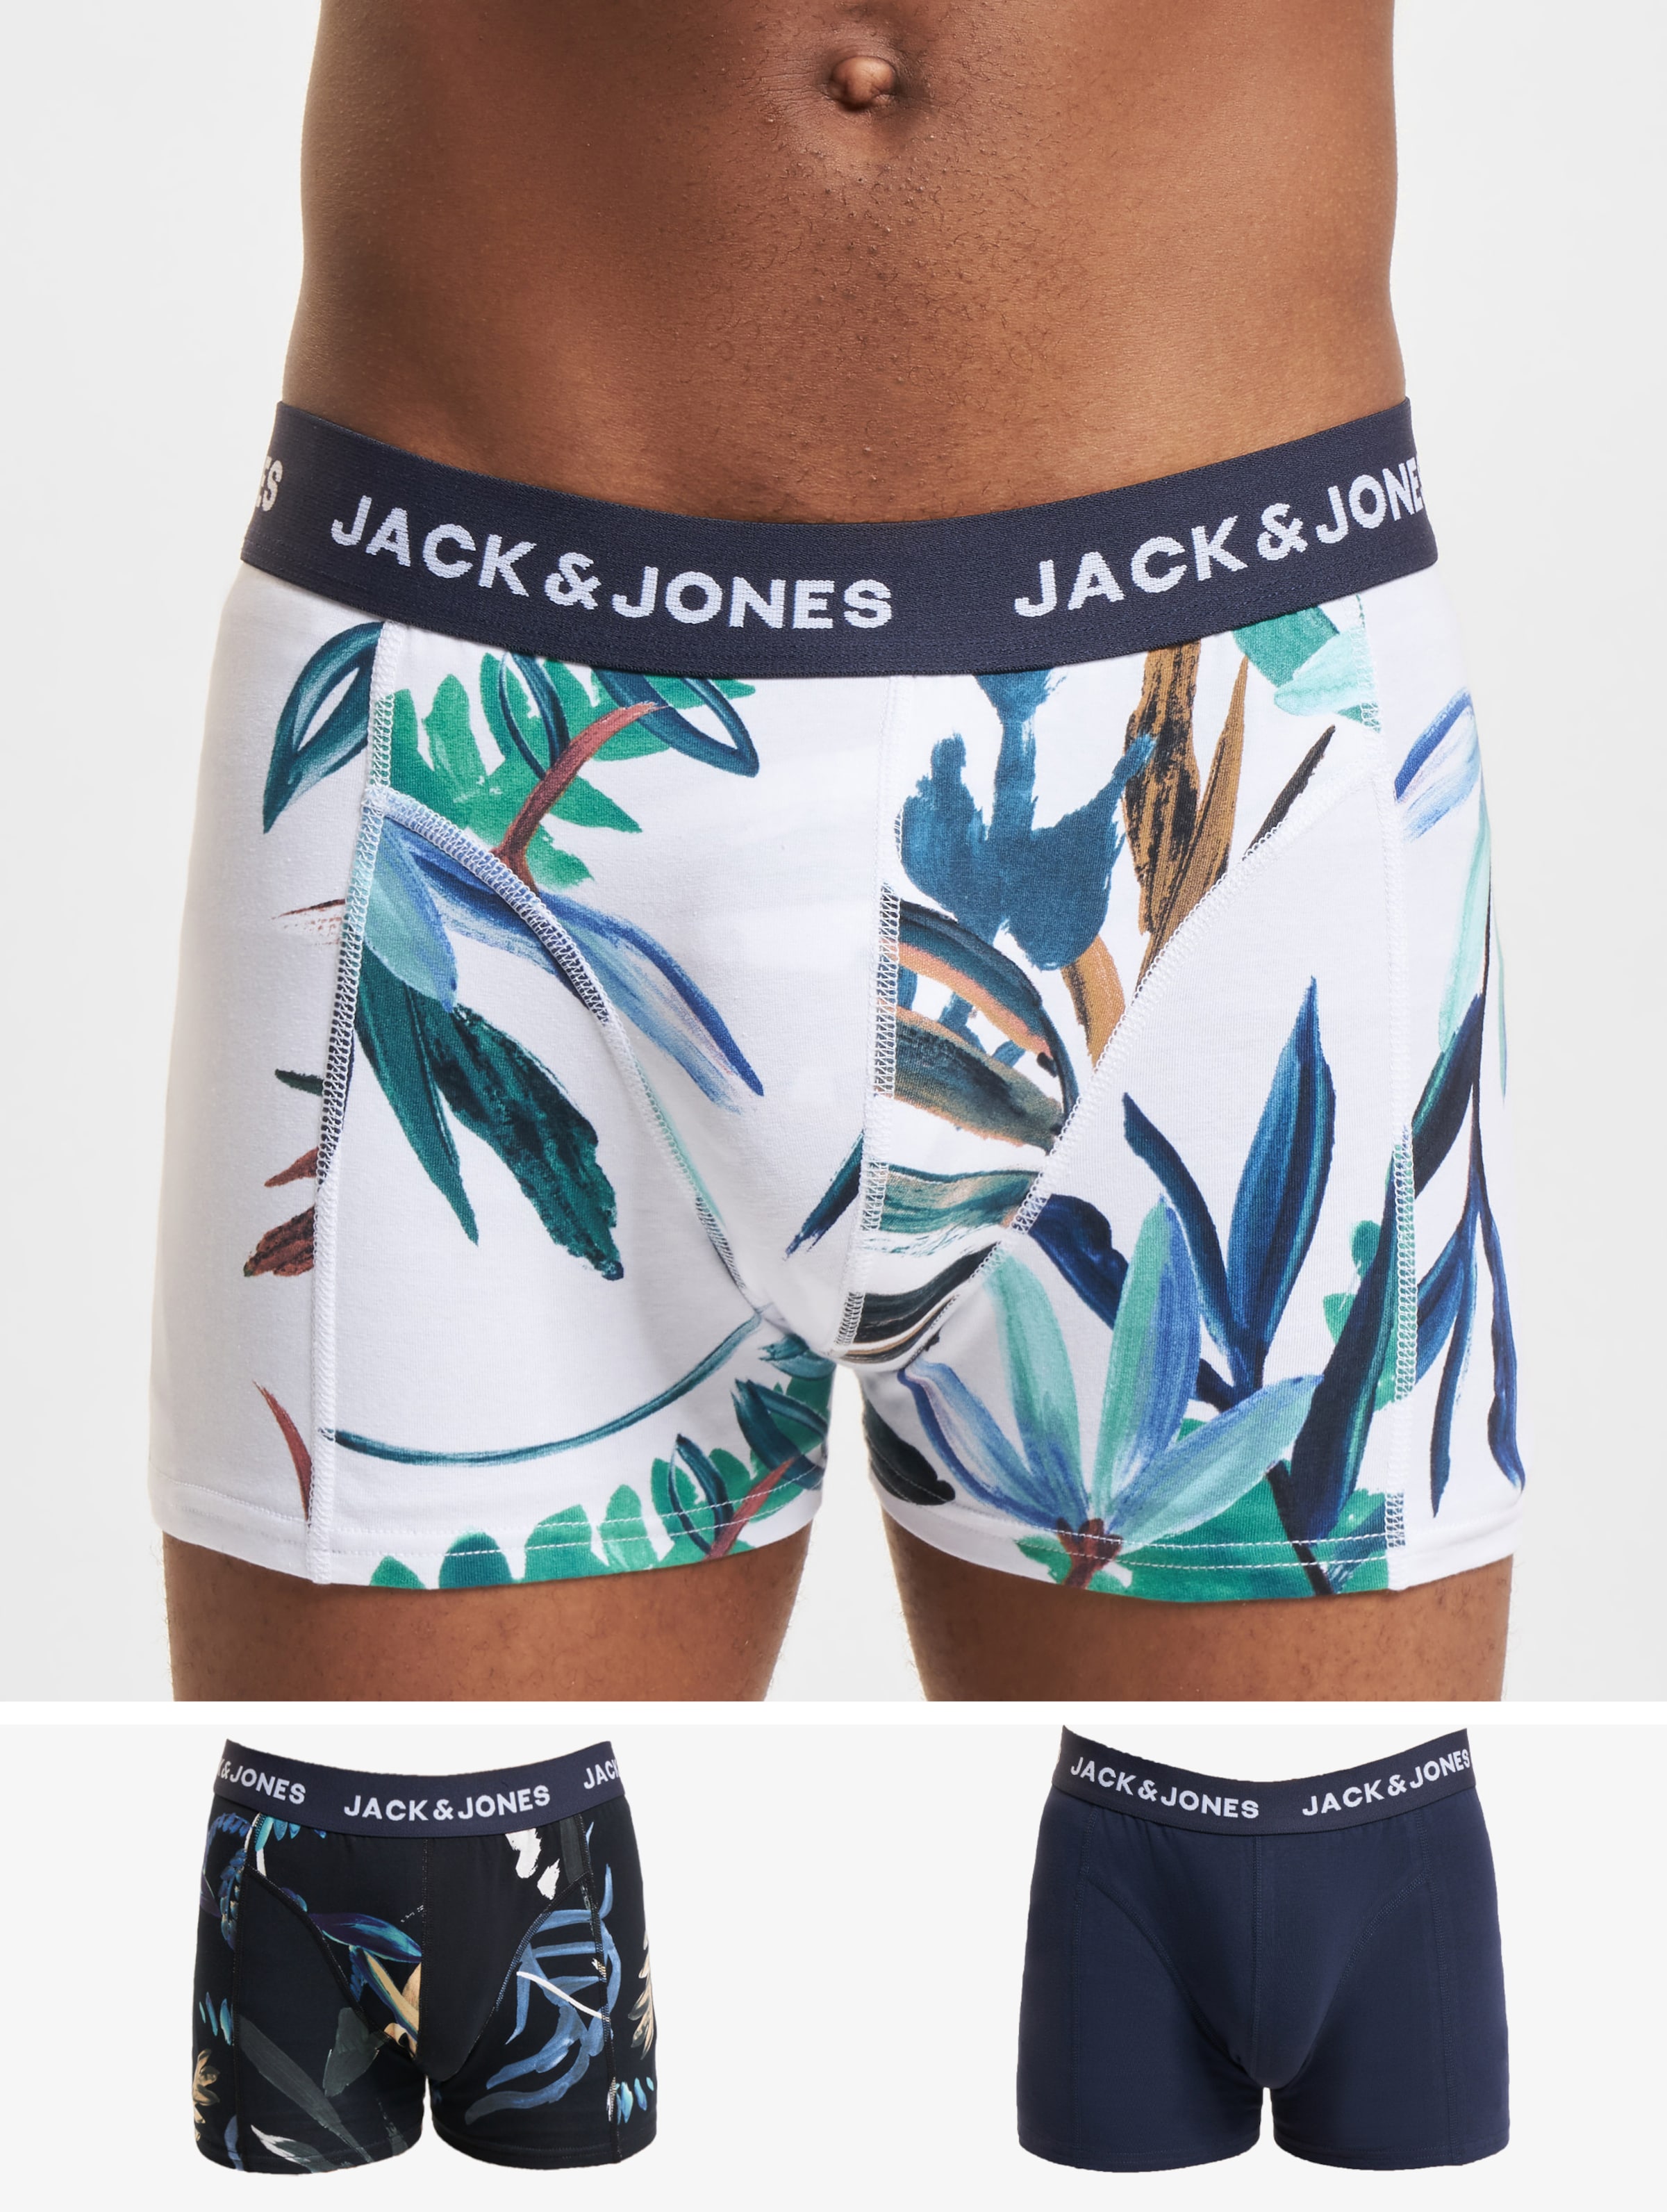 JACK & JONES Jaclouis trunks (3-pack) - heren boxers normale lengte - zwart - grijs en wit - Maat: L